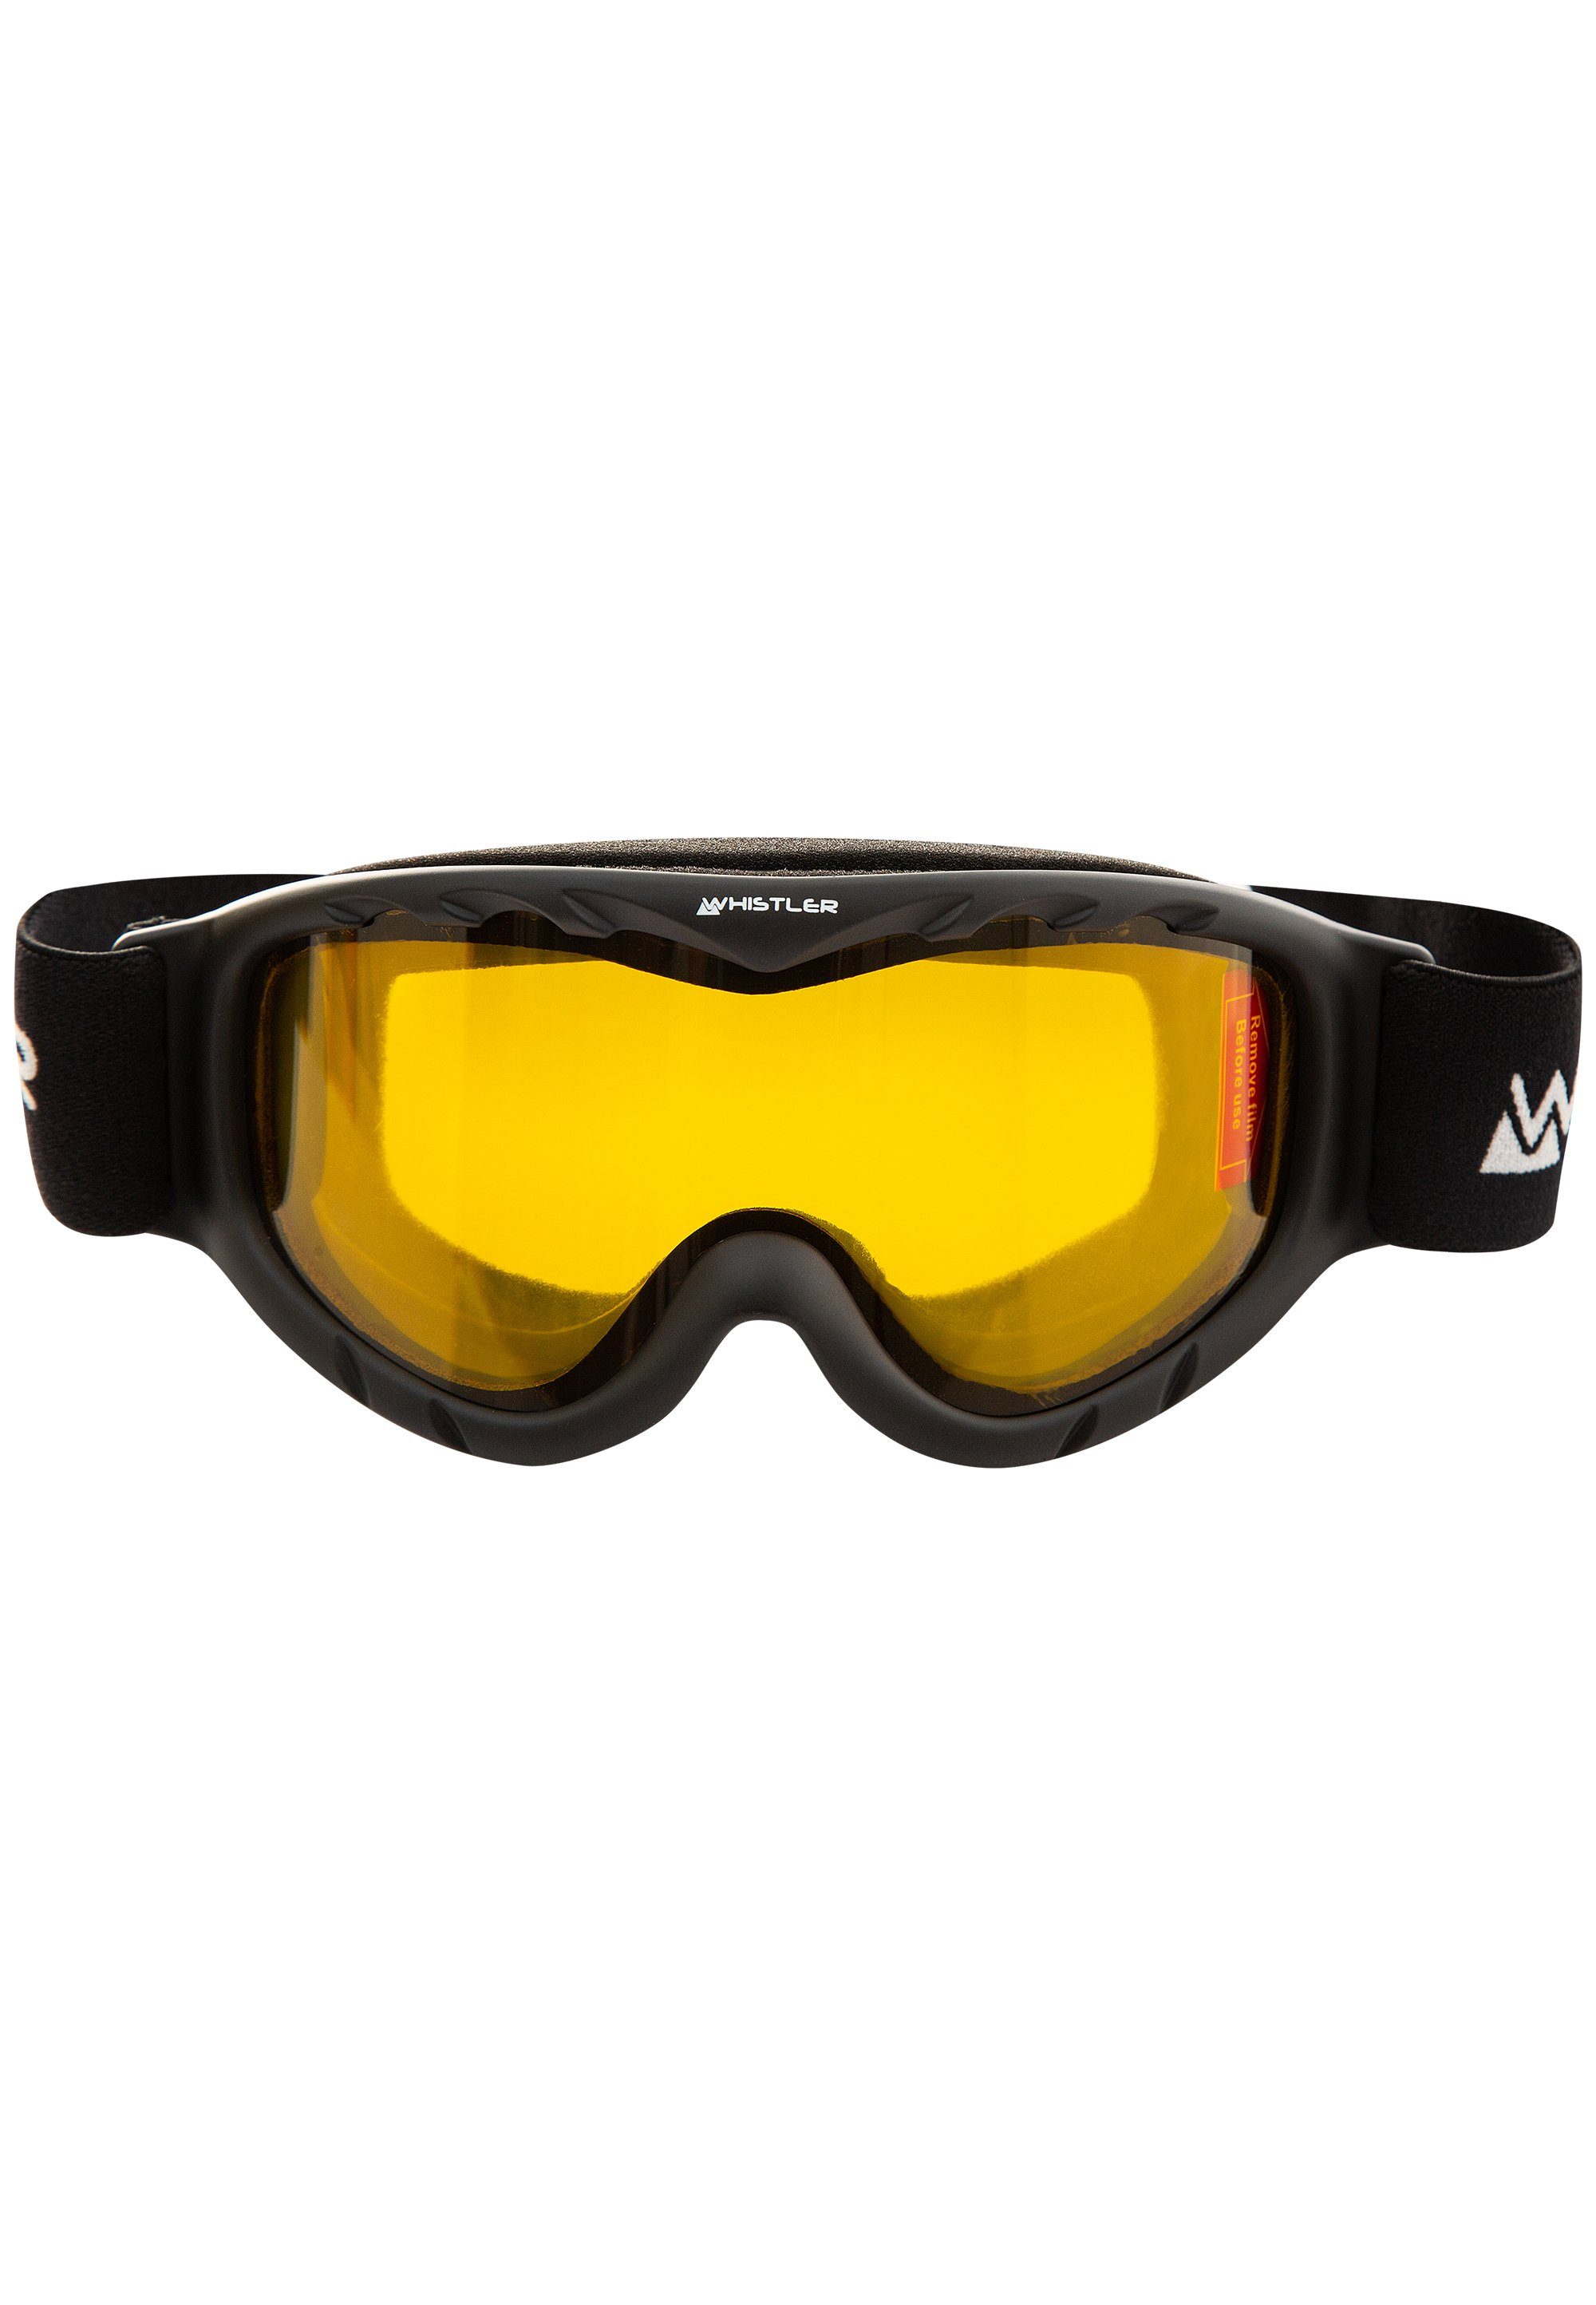 WS300 WHISTLER Ski Anti-Fog-Beschichtung mit Goggle, Skibrille schwarz Jr.